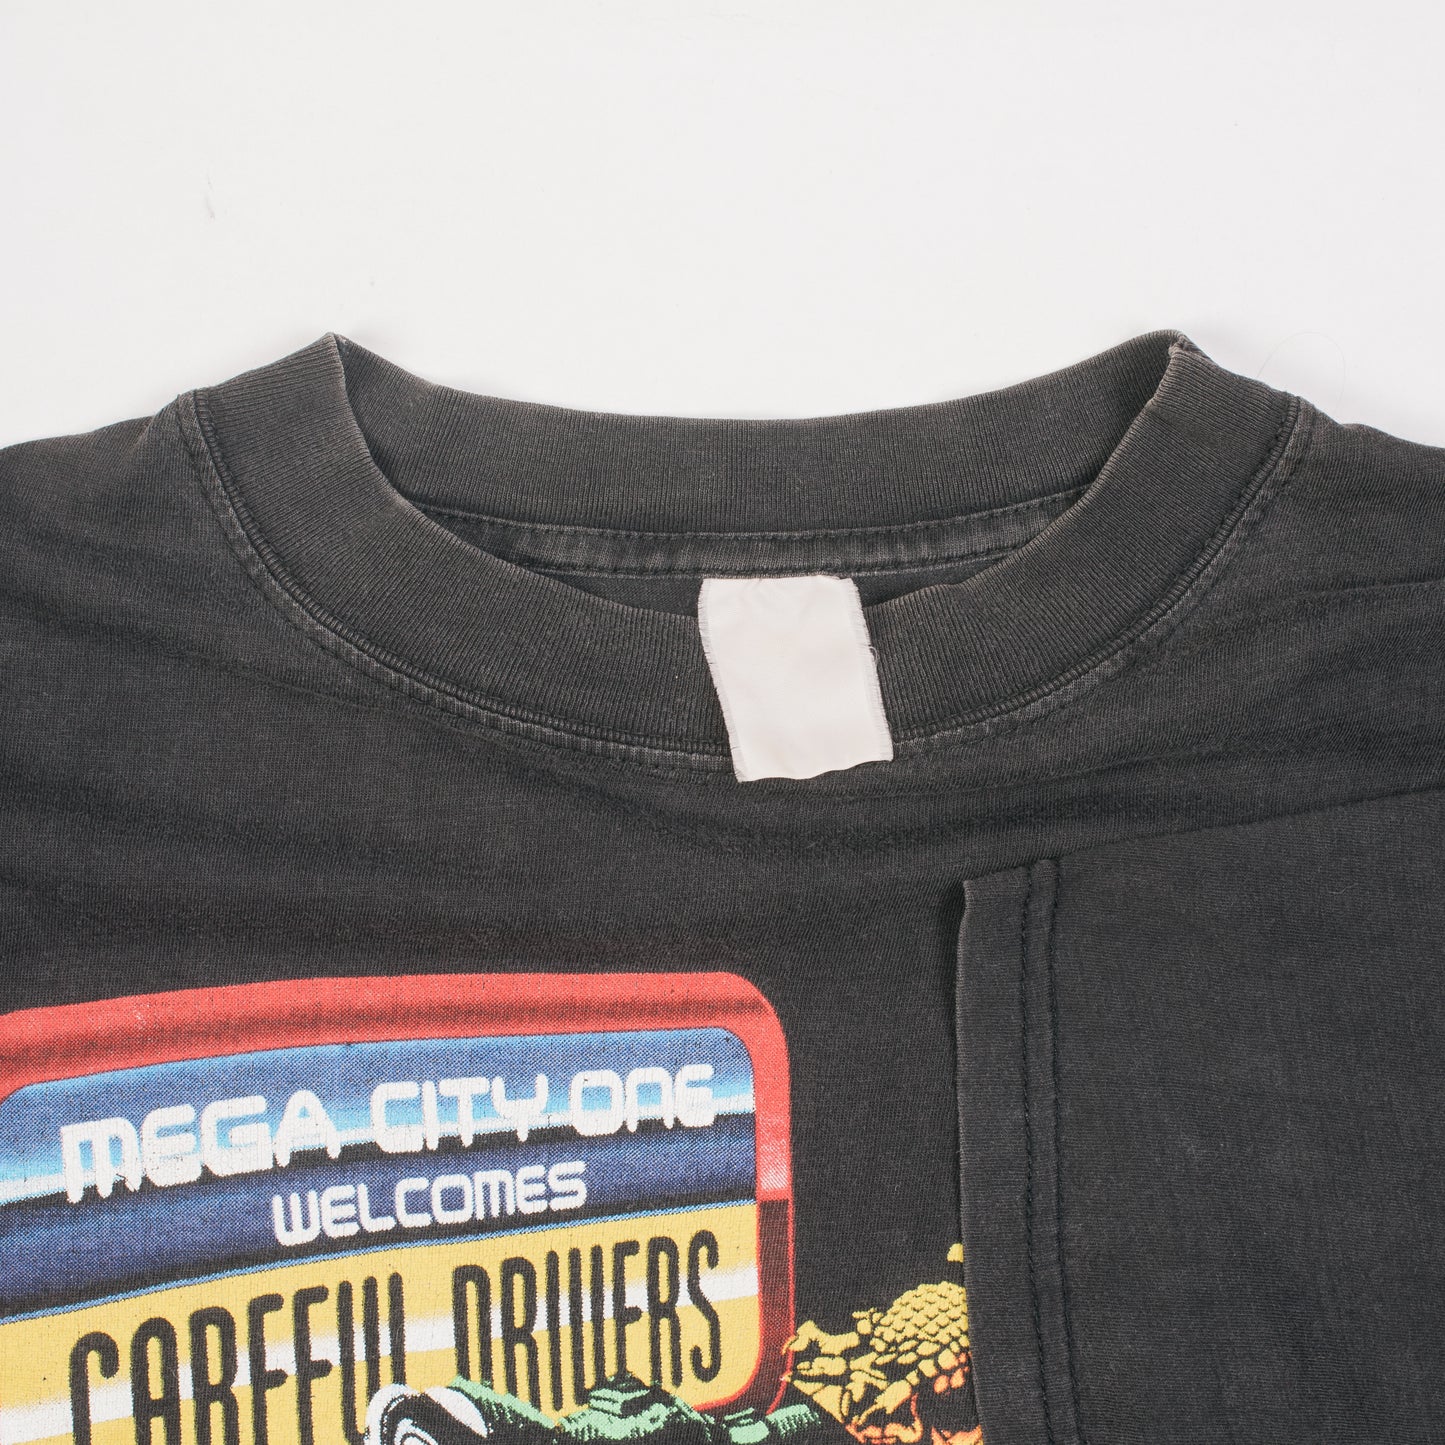 Vintage 1995 Judge Dredd Video Game Promo T-Shirt